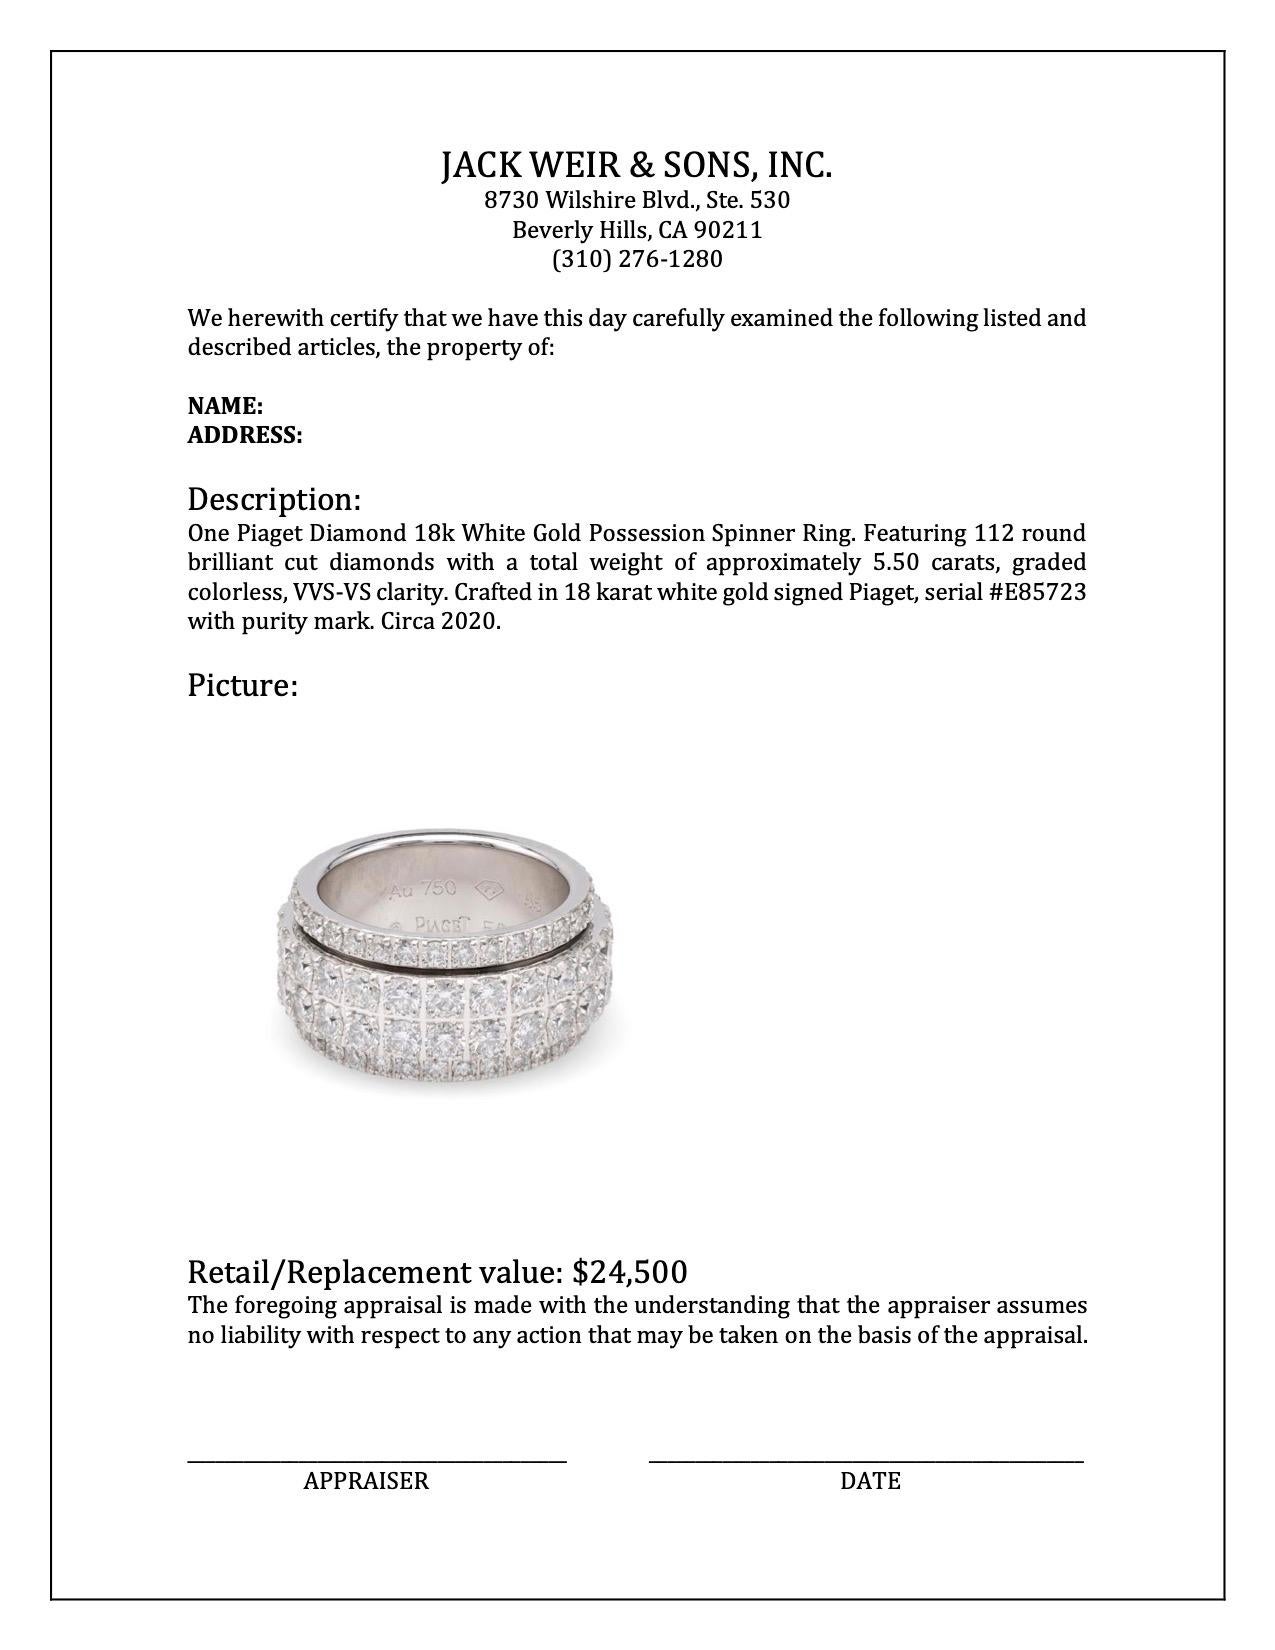 Piaget Diamond 18k White Gold Possession Spinner Ring 1